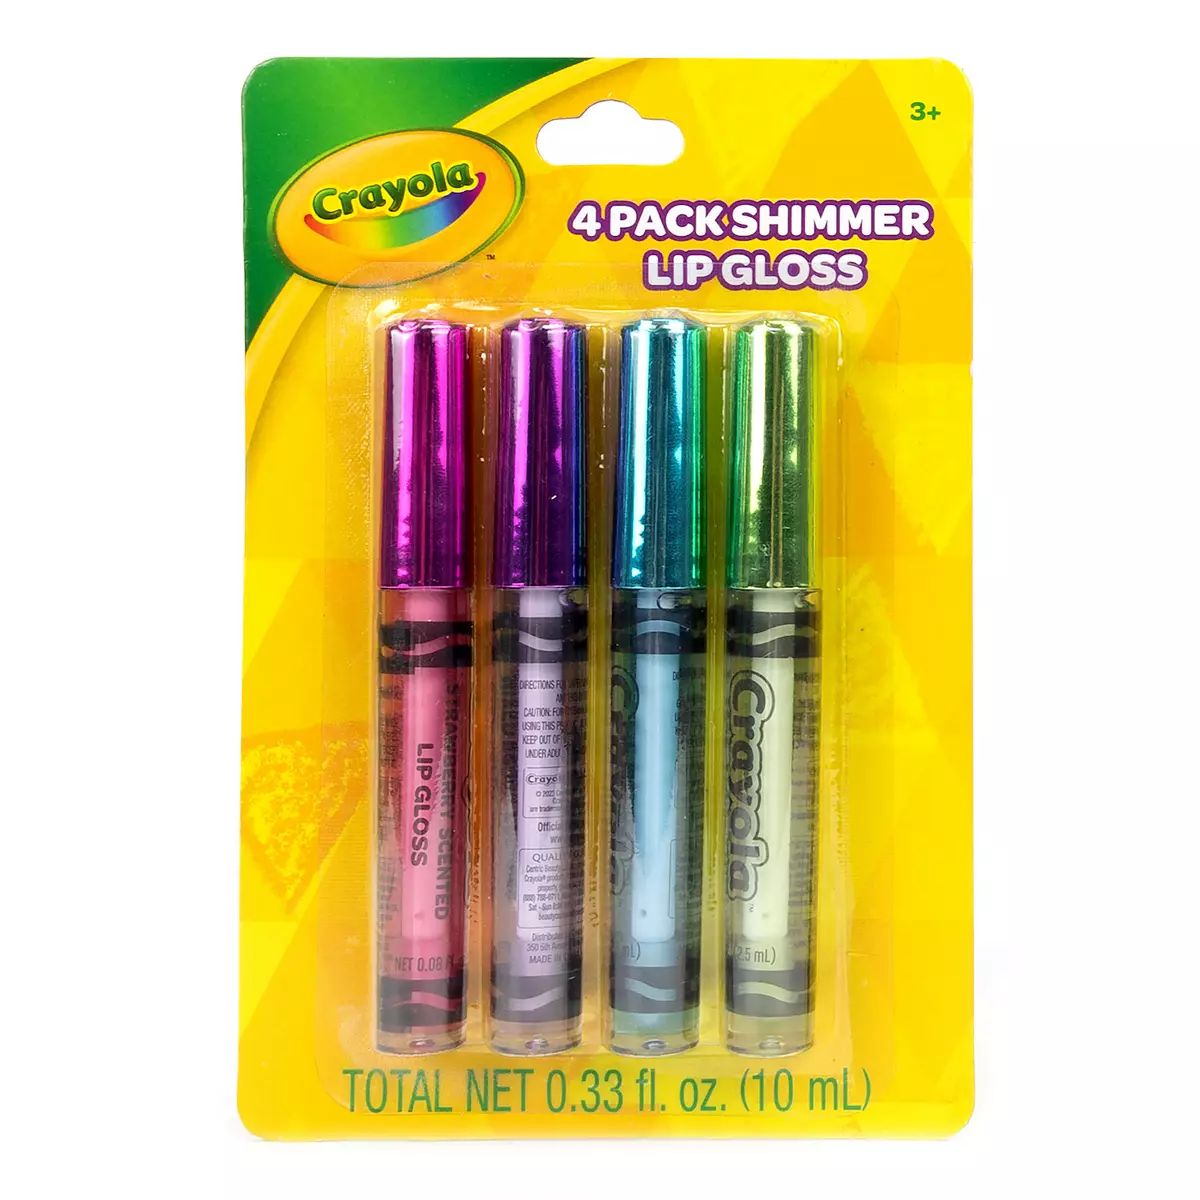 Crayola 4-Pack Shimmer Lip Gloss | Kohl's